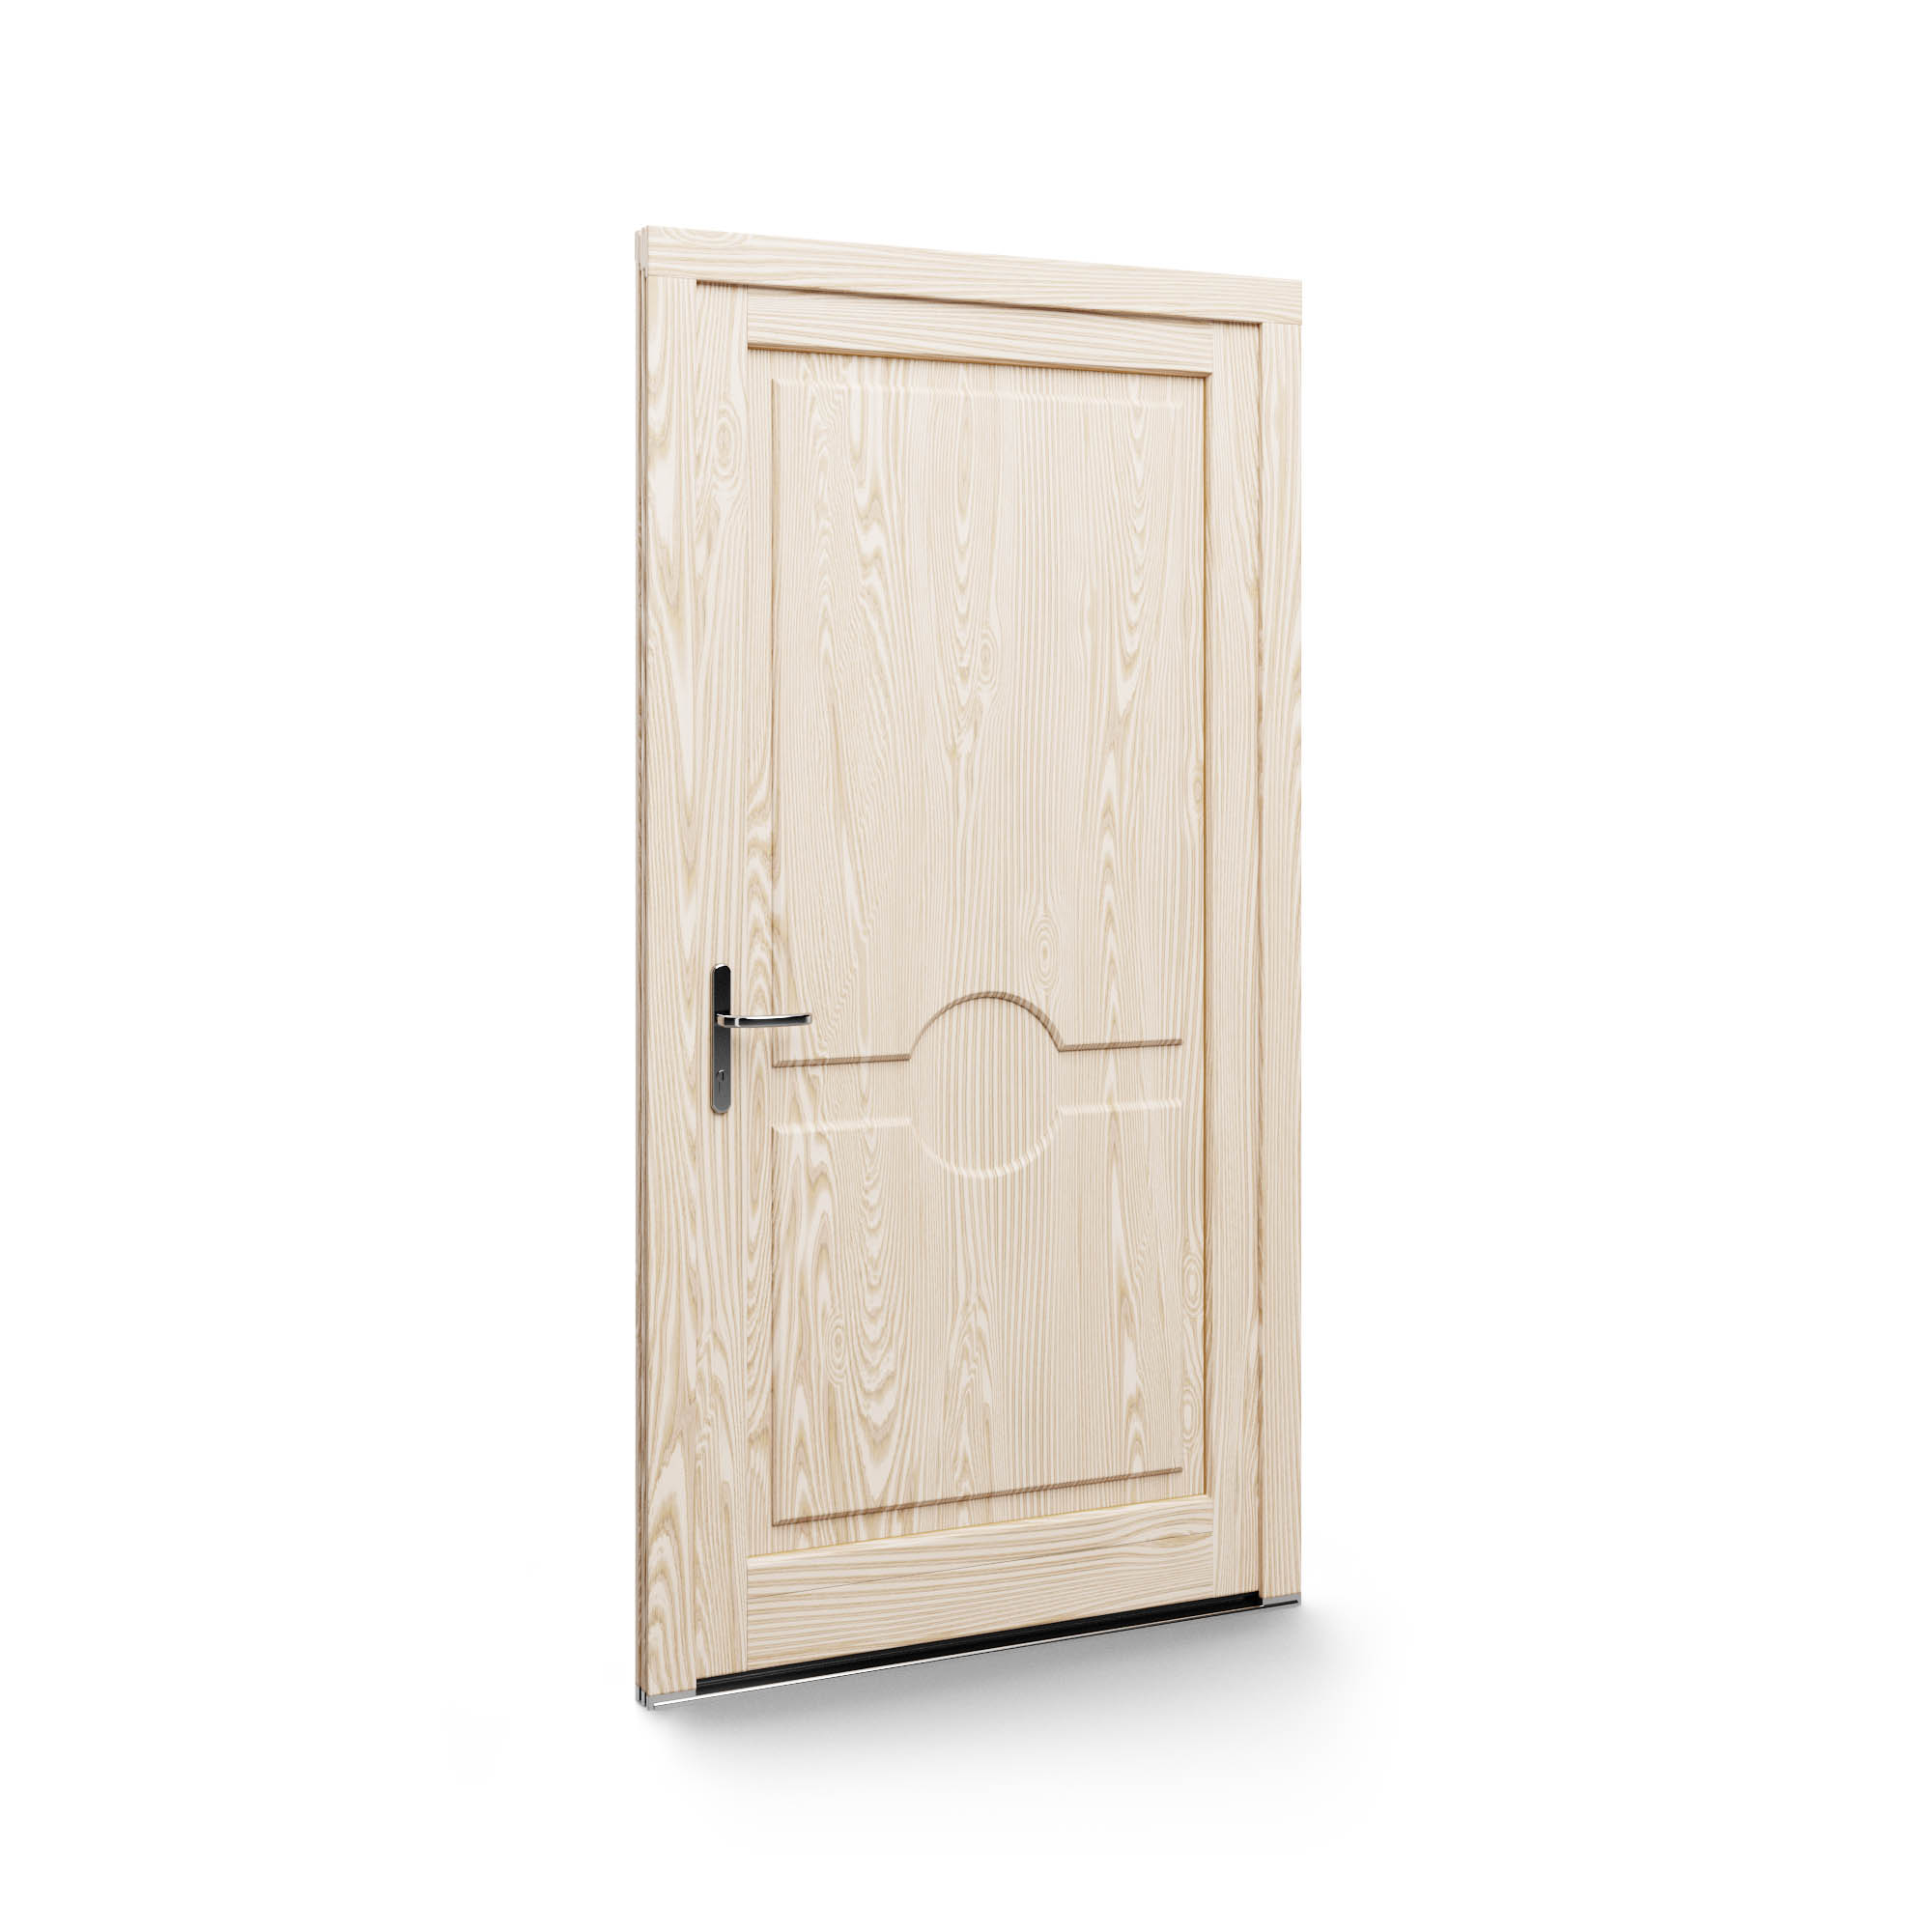 Timber Doors Classic 02